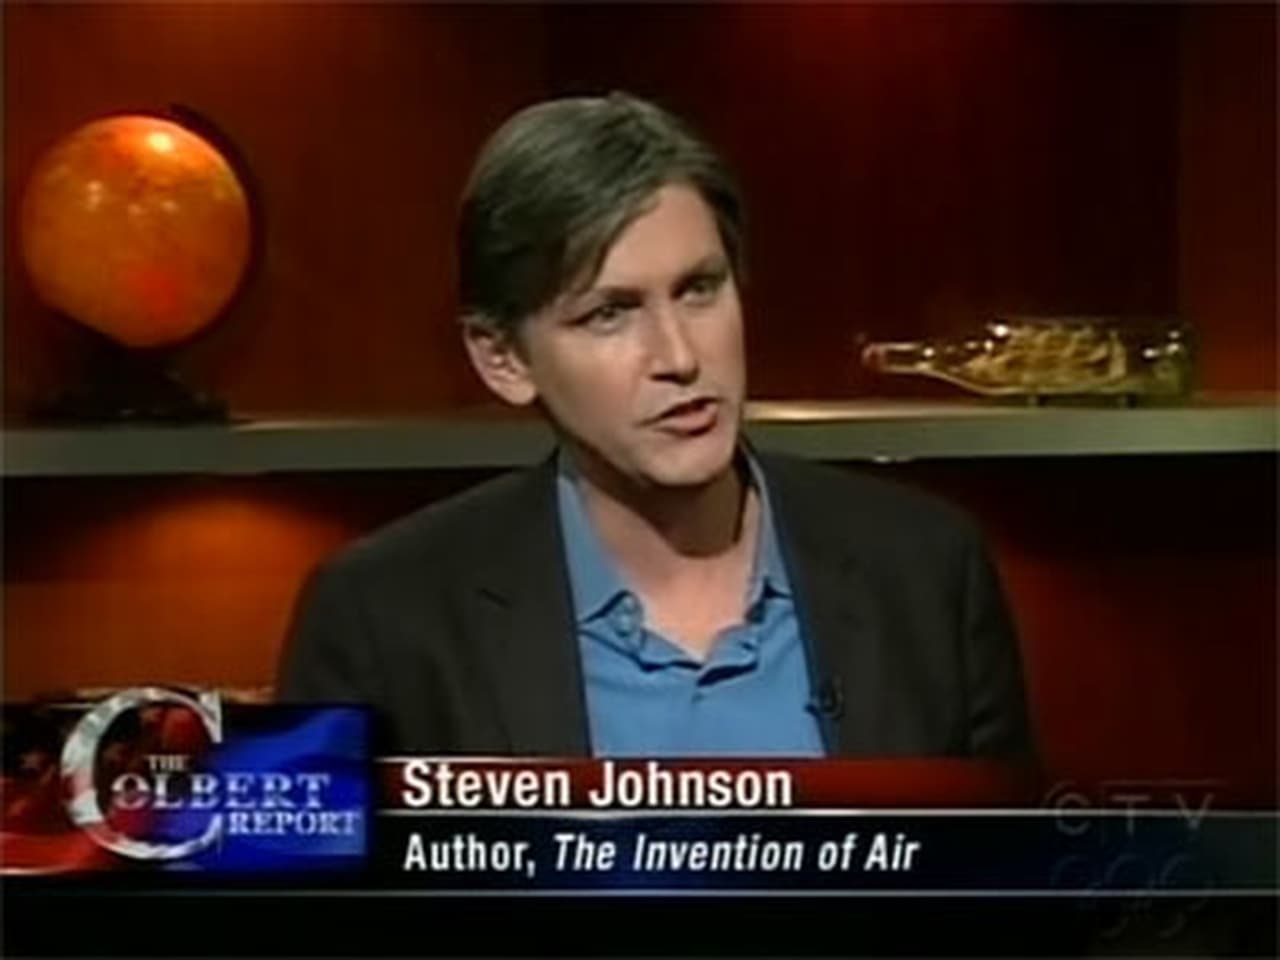 The Colbert Report - Season 5 Episode 32 : Steven Johnson